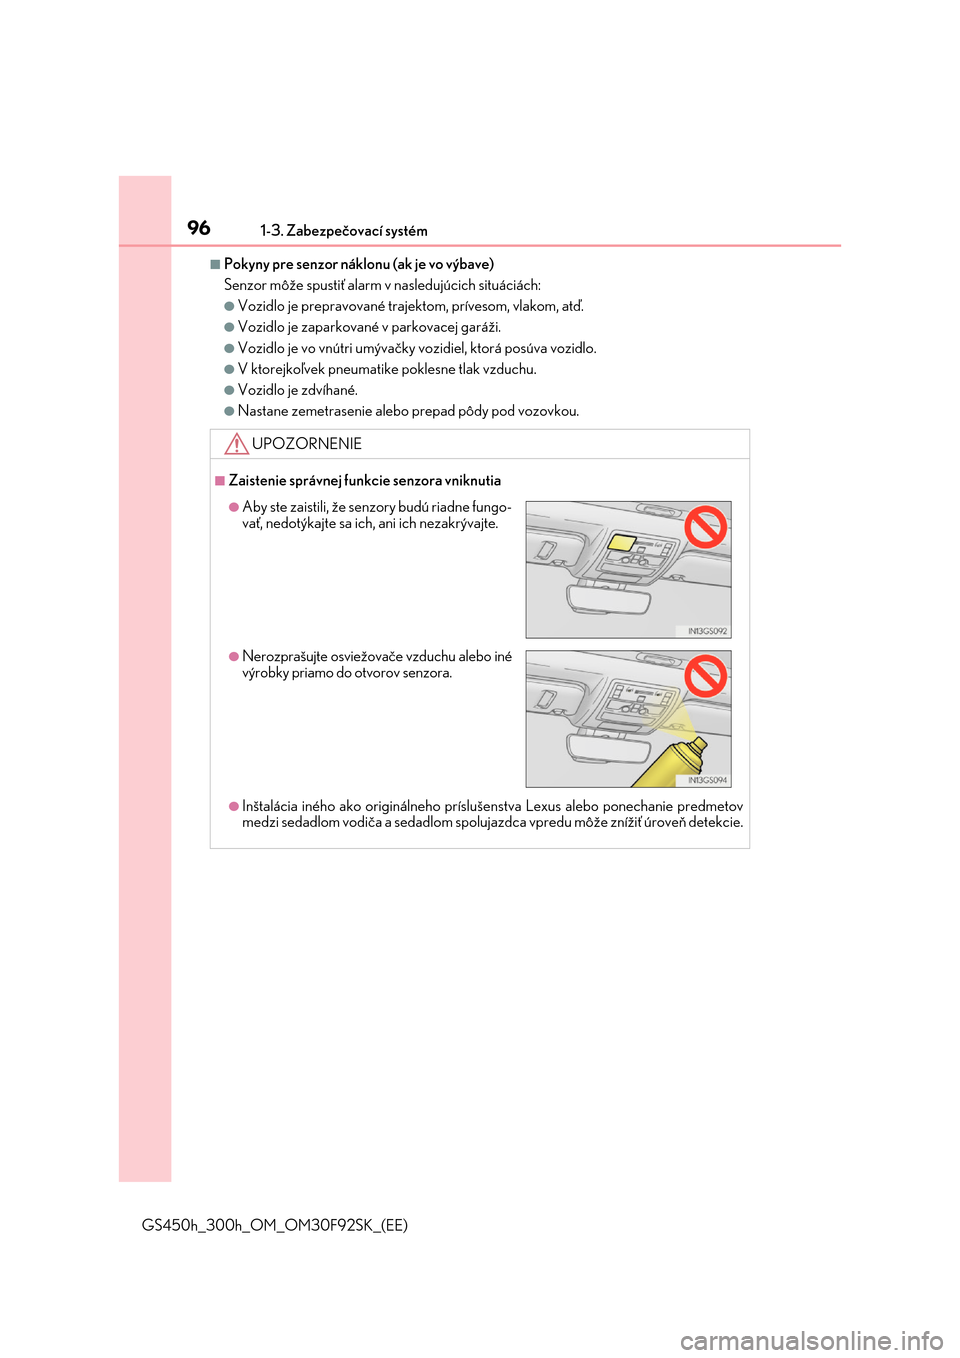 Lexus GS450h 2017  Užívateľská príručka (in Slovak) 961-3. Zabezpečovací systém
GS450h_300h_OM_OM30F92SK_(EE)
■Pokyny pre senzor náklonu (ak je vo výbave) 
Senzor môže spustiť alarm  v nasledujúcich situáciách:
●Vozidlo je prepravované 